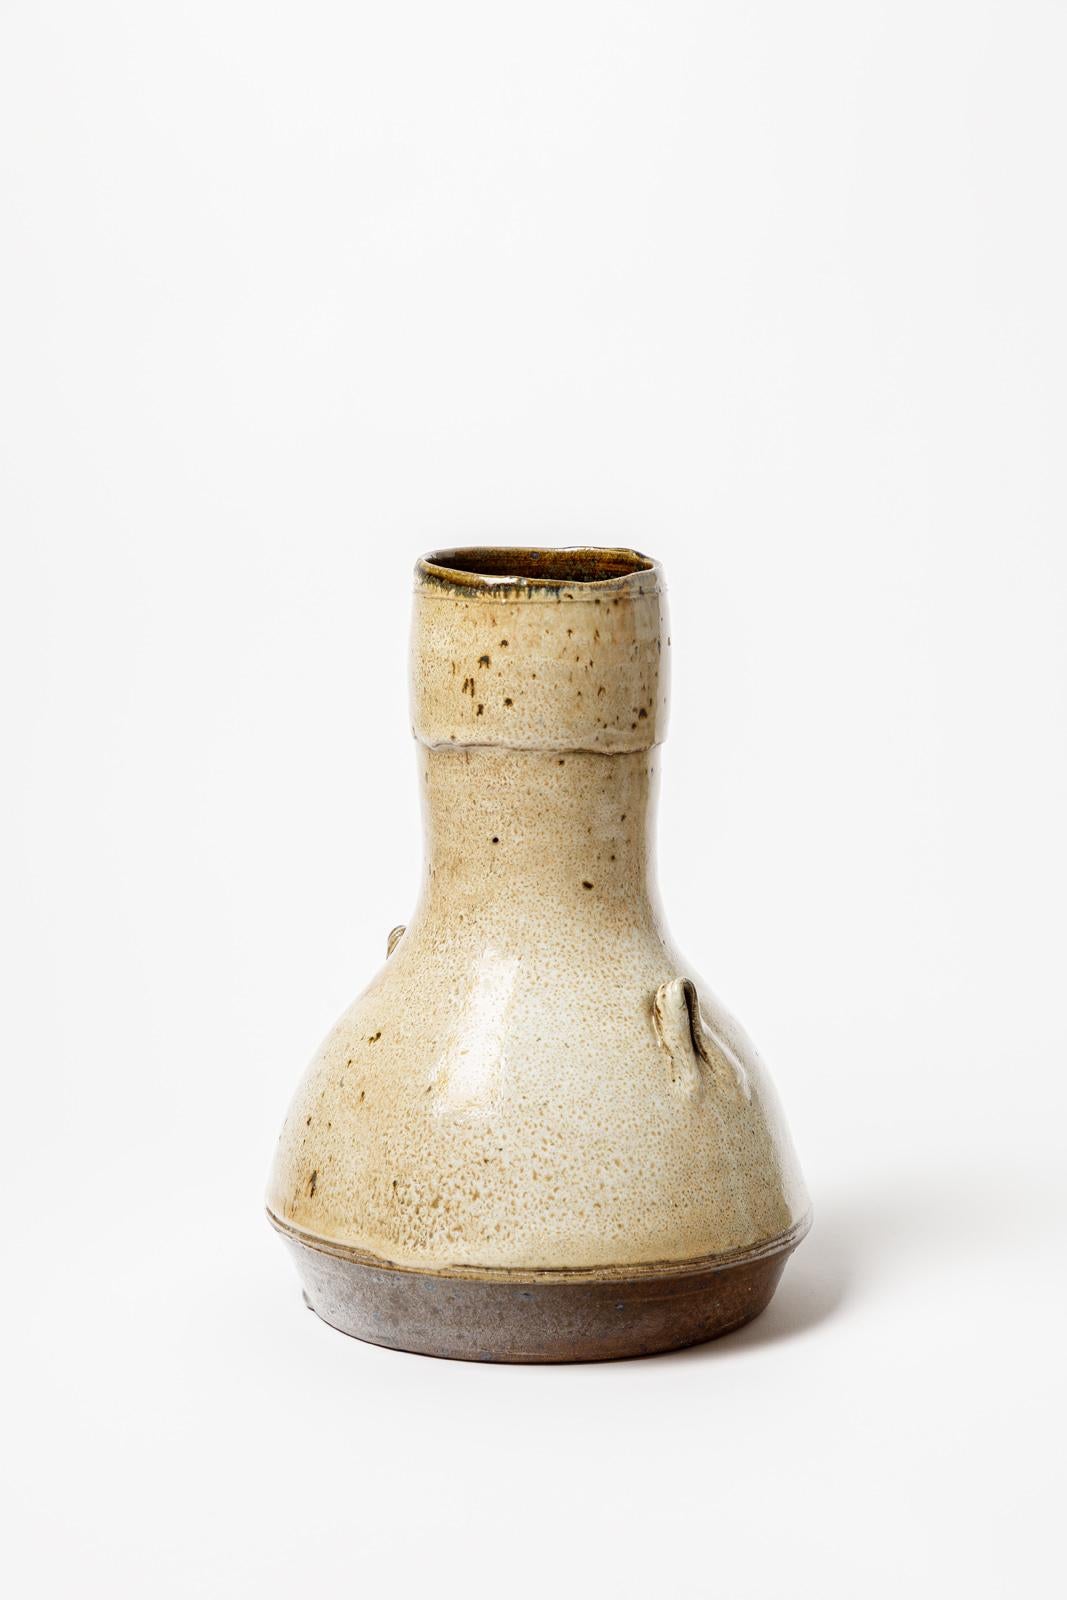 Français Gistave Tiffoche grand vase en céramique marron du 20ème siècle, 28 cm, vers 1960  en vente